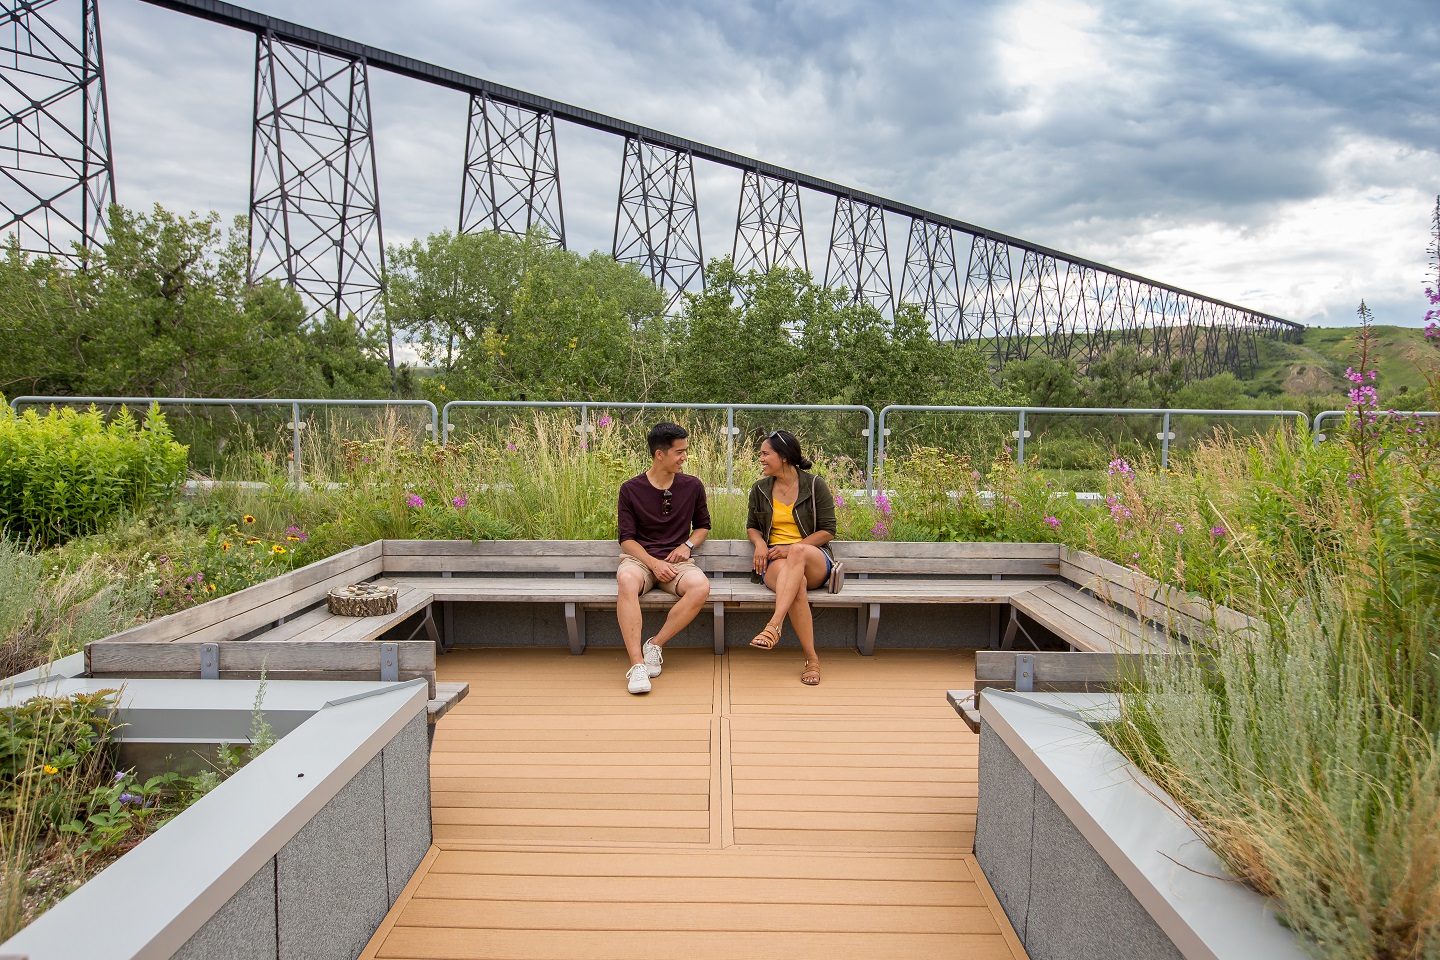 Deux personnes assises sur un banc entouré de plantes. Il y a un pont ferroviaire à l’arrière-plan.